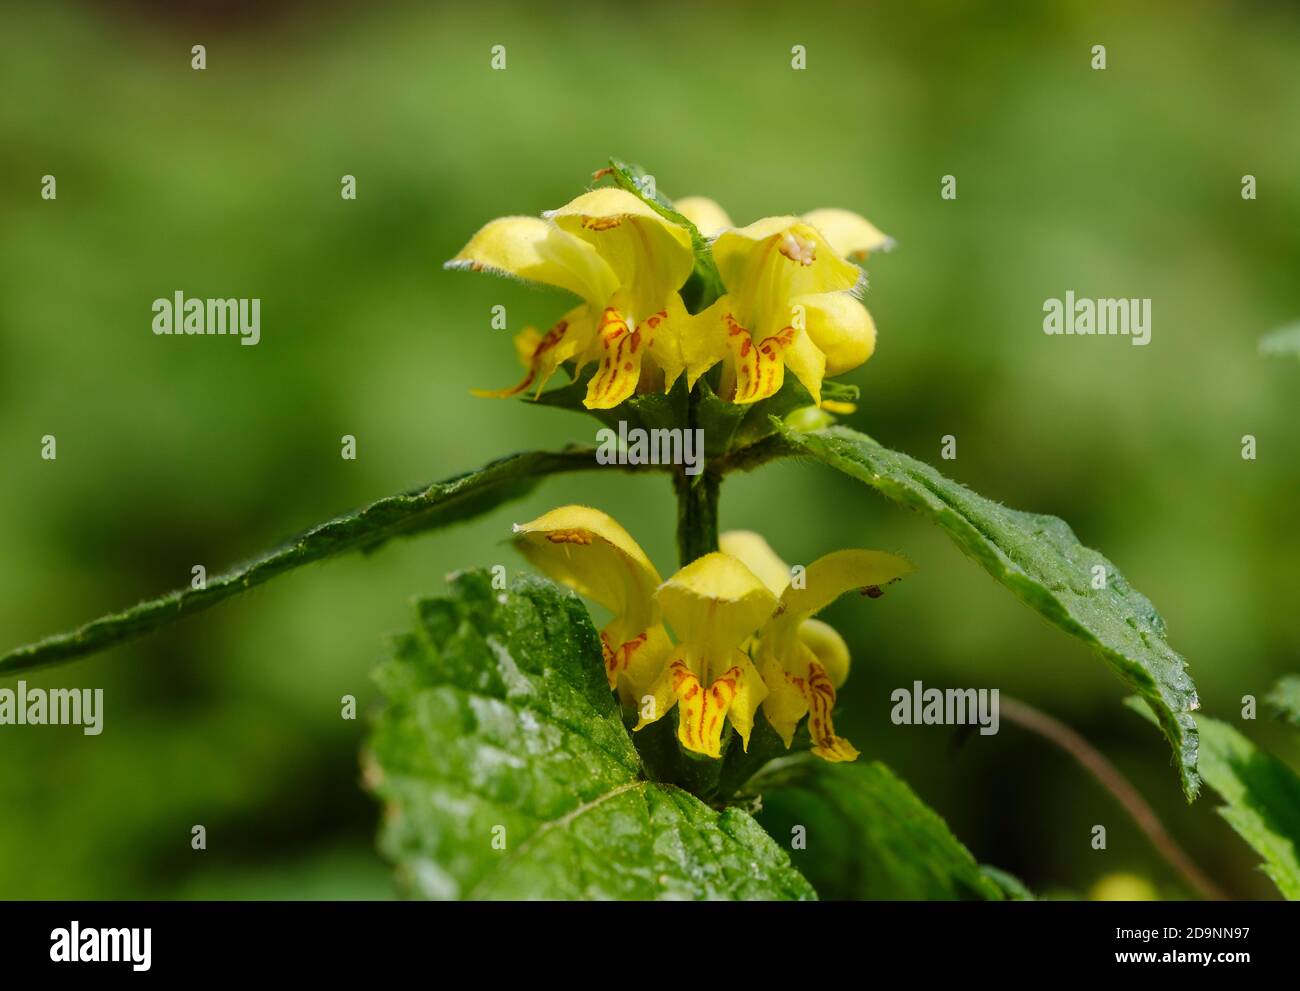 Common golden nettle (Lamium galeobdolon), blooming, Upper Bavaria, Bavaria, Germany Stock Photo